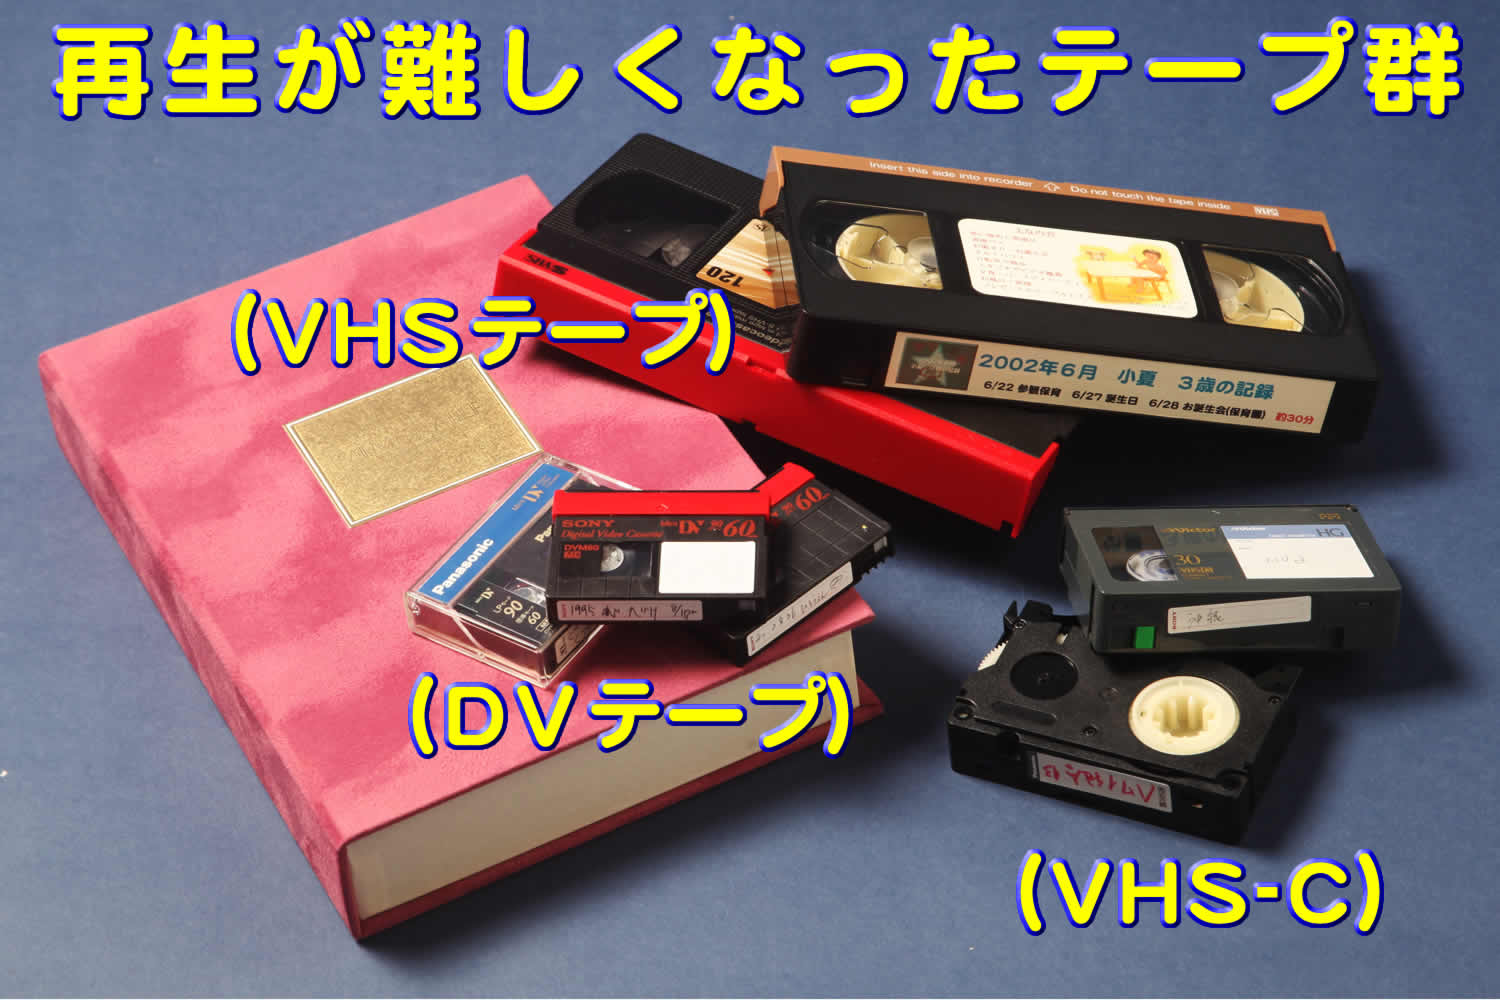 古いテープメディア